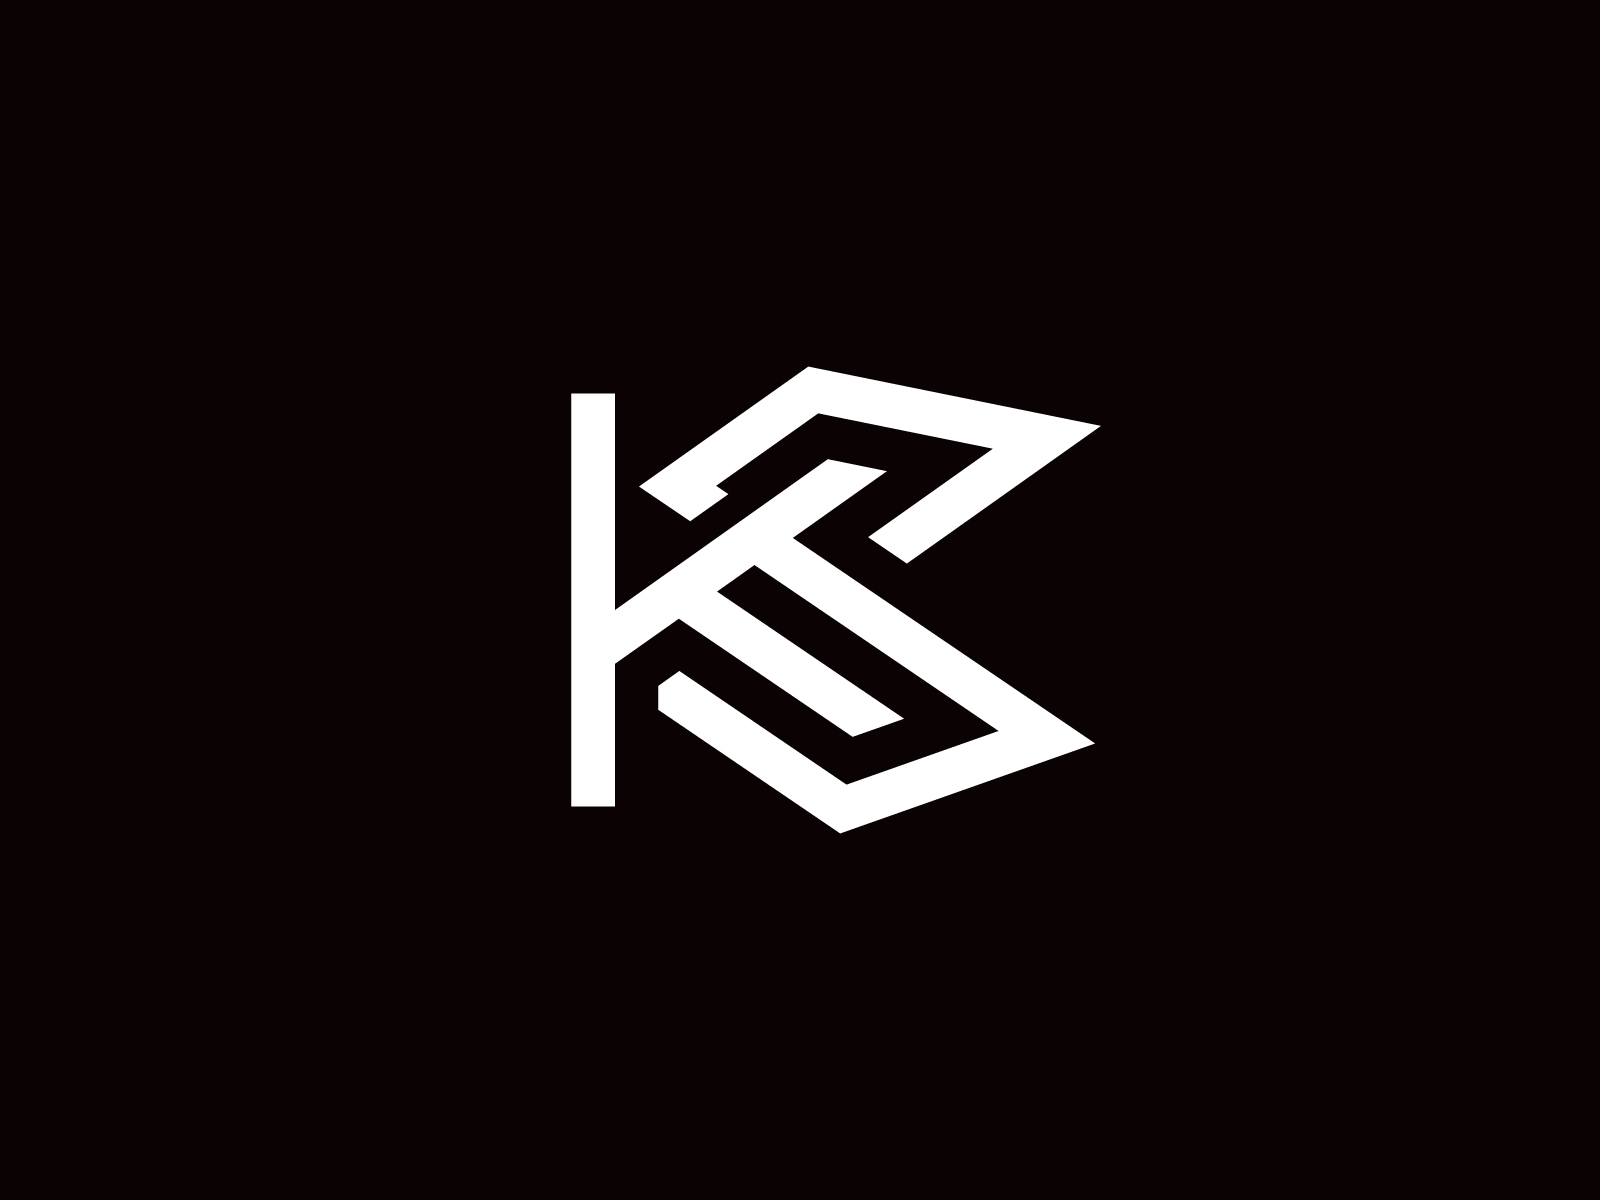 KS Logo or SK Logo by Sabuj Ali on Dribbble